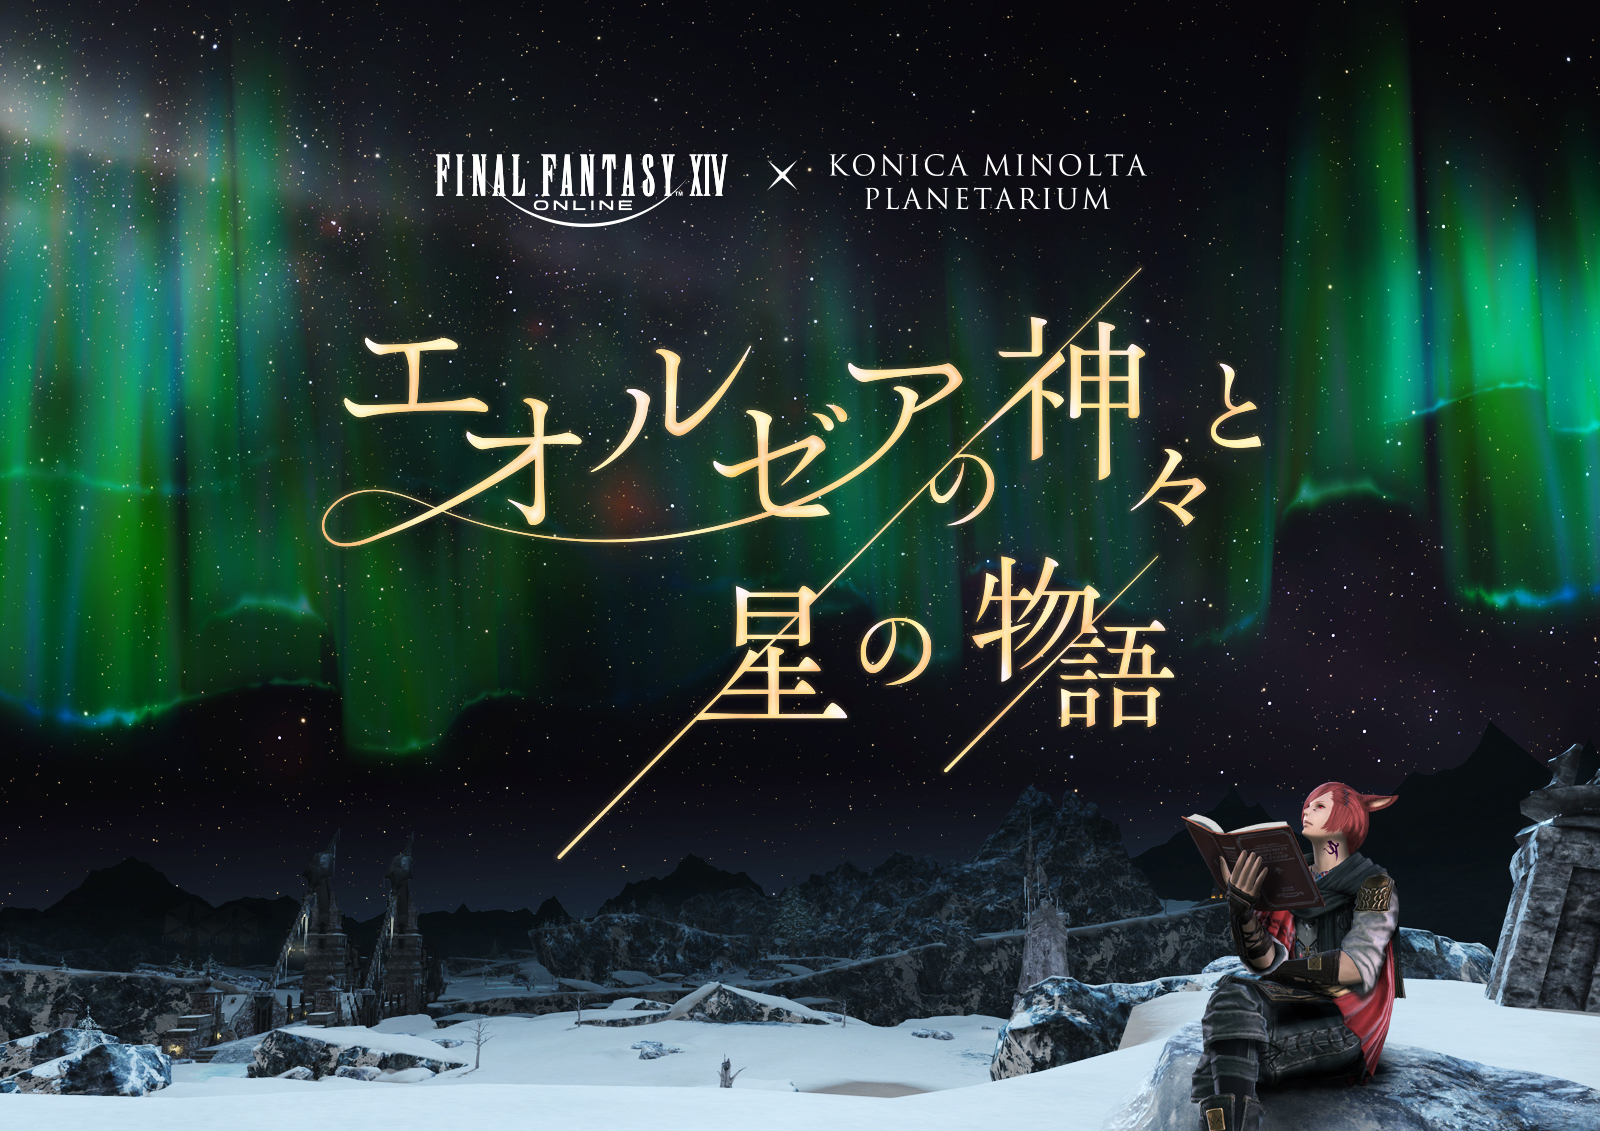 ファイナルファンタジーXIV × コニカミノルタプラネタリウム
「エオルゼアの神々と星の物語」
2024年2月2日より上映！